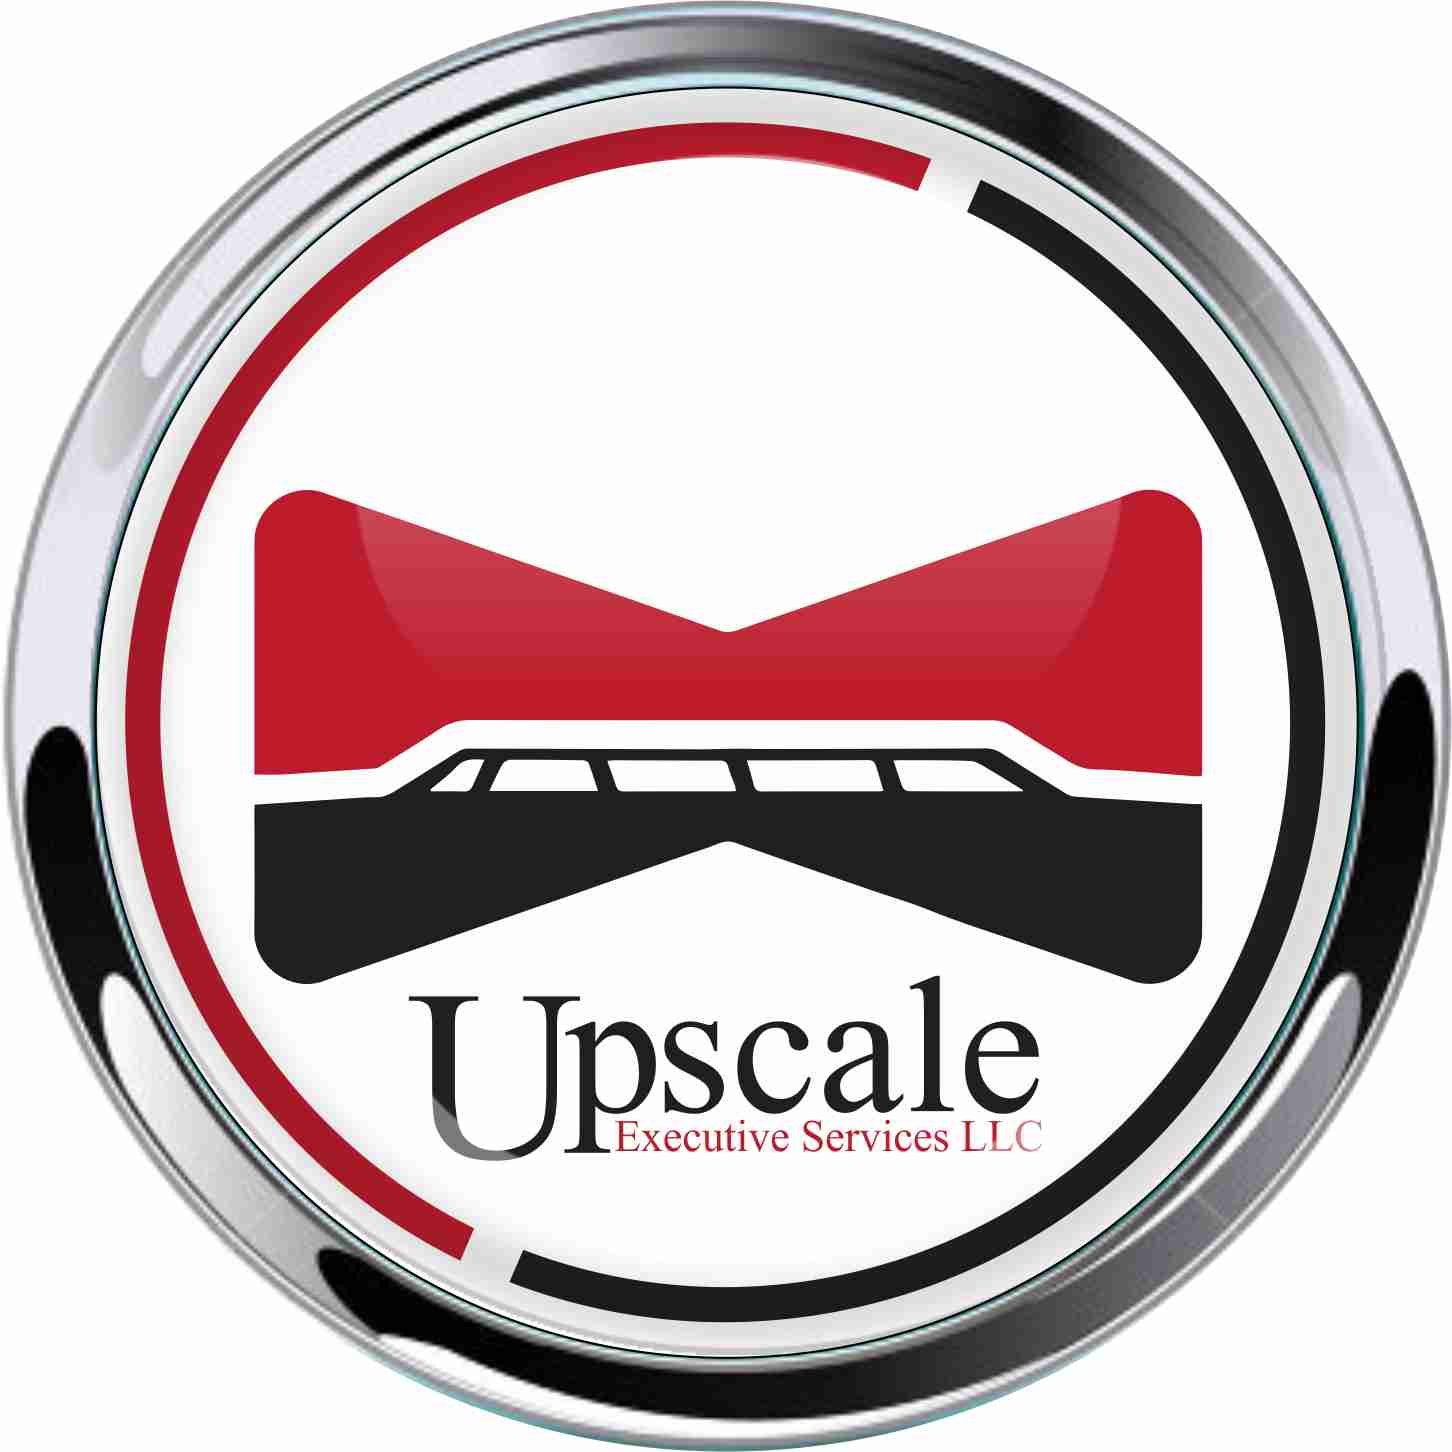 Upscale - Car Emblem